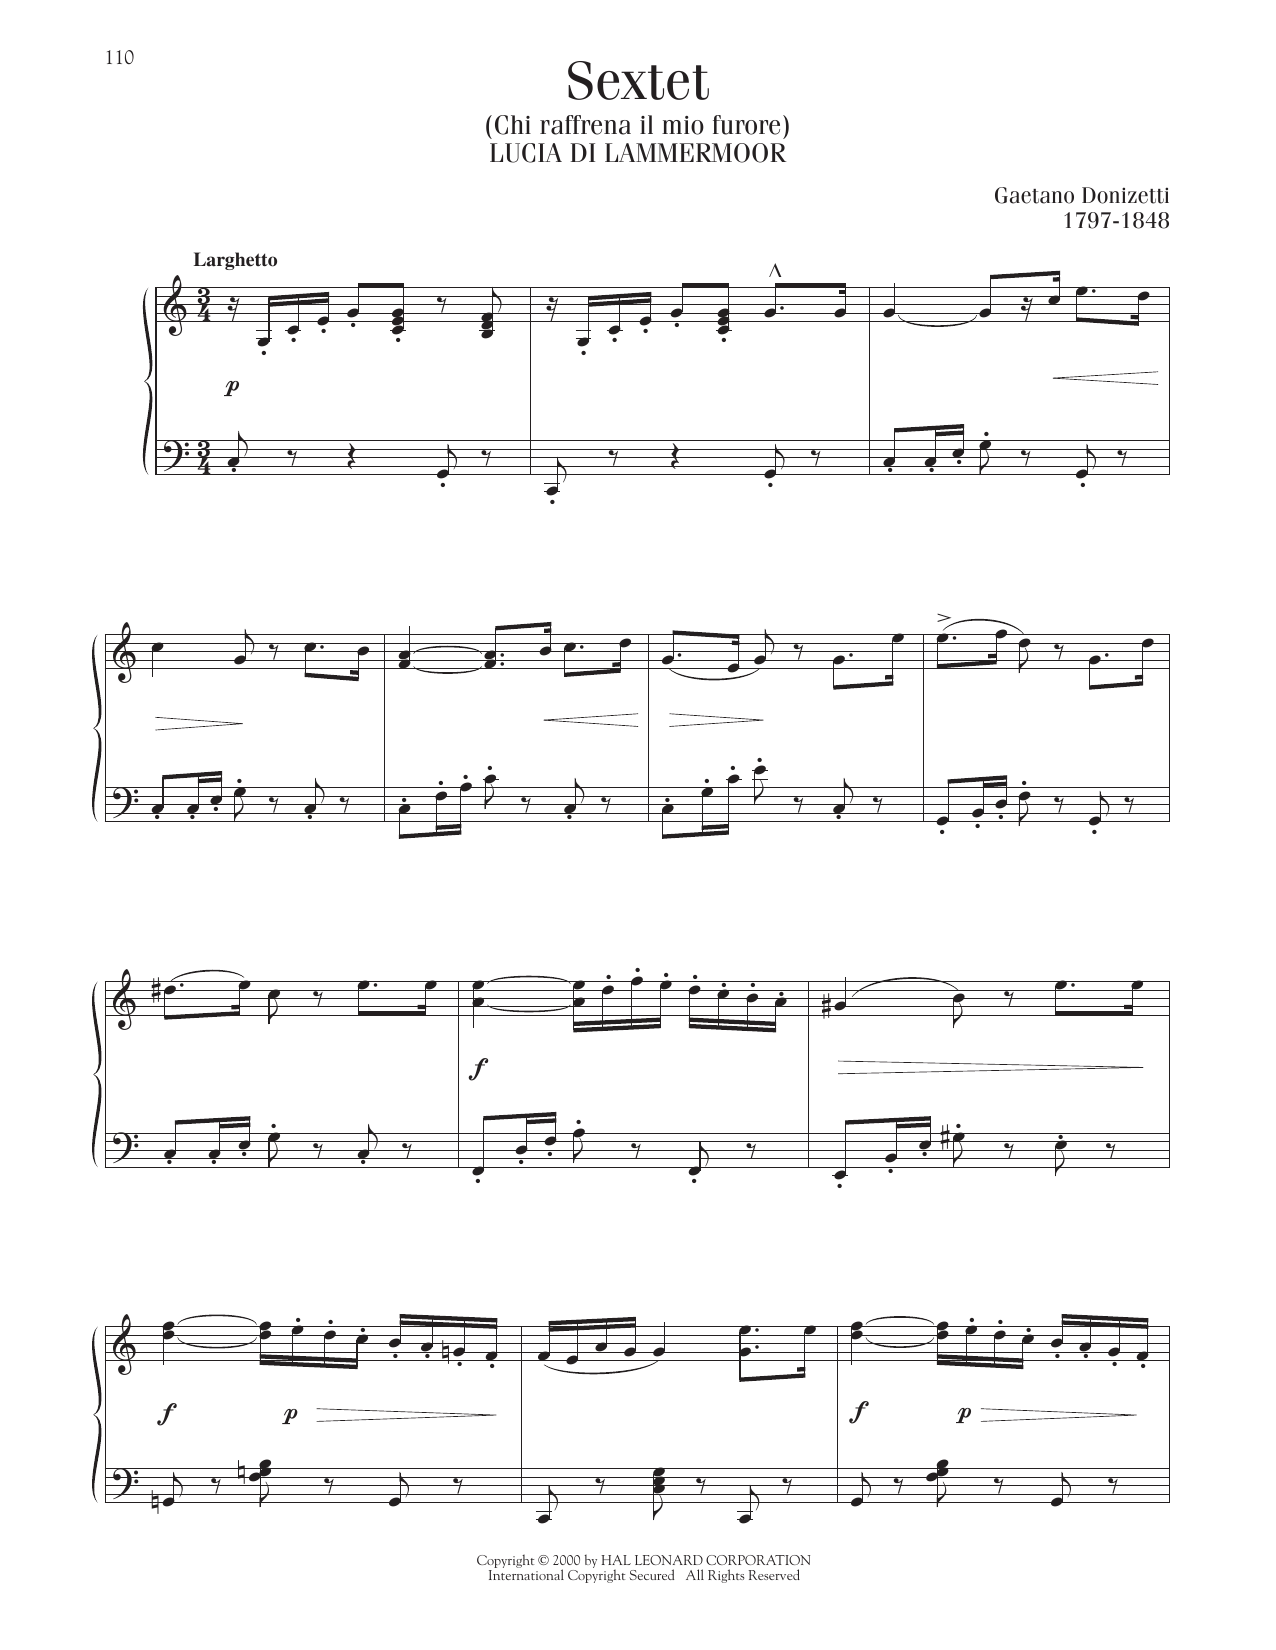 Gaetano Donizetti Sextet (Chi Raffrena Il Mio Furore) Sheet Music Notes & Chords for Piano Solo - Download or Print PDF